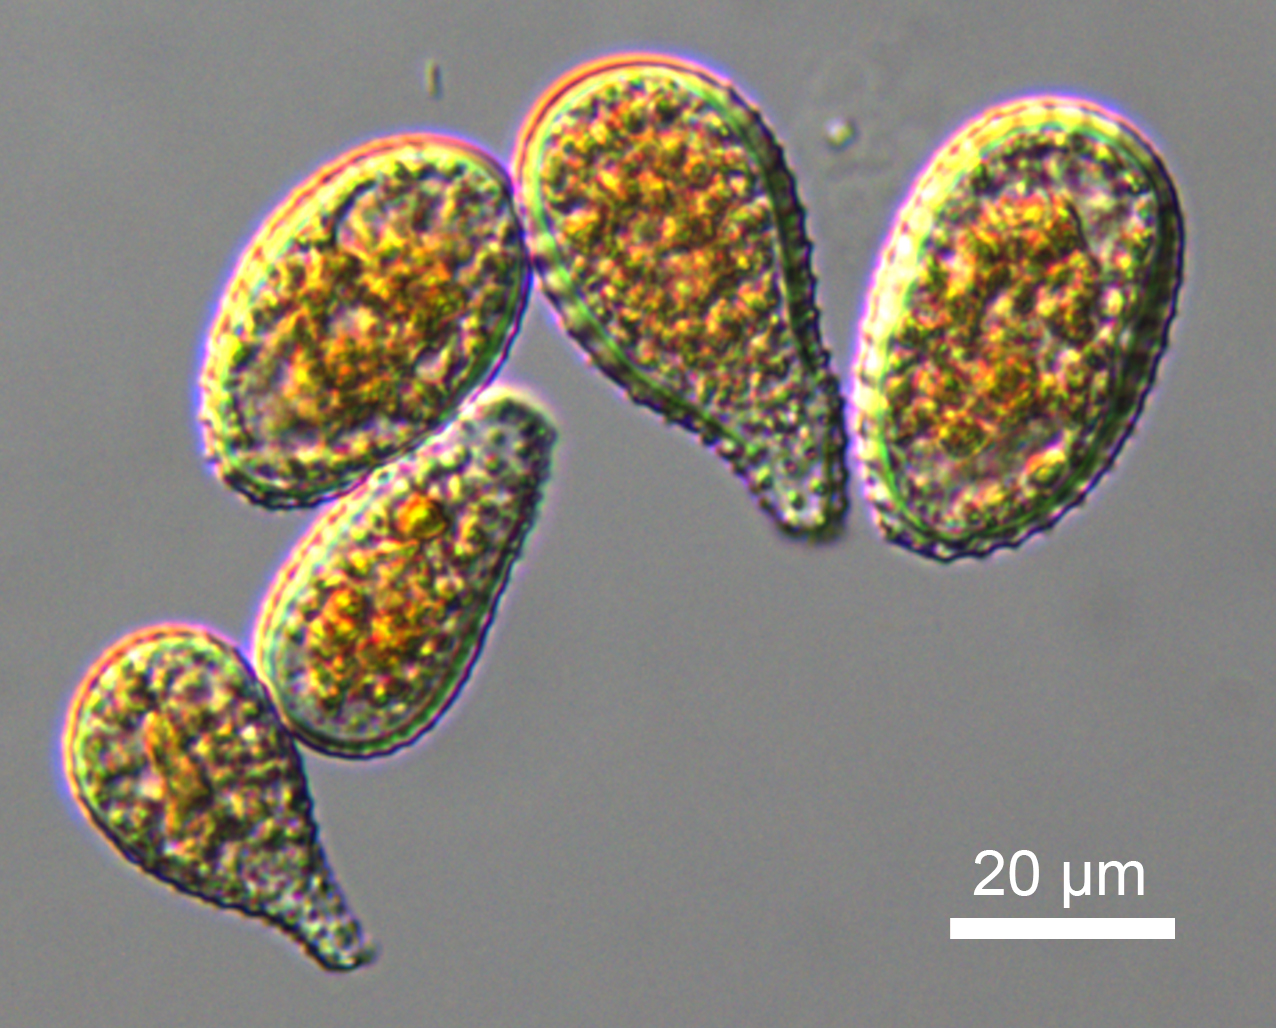 Urediniospores of Melampsora x columbiana. Photo by Edward Barge.